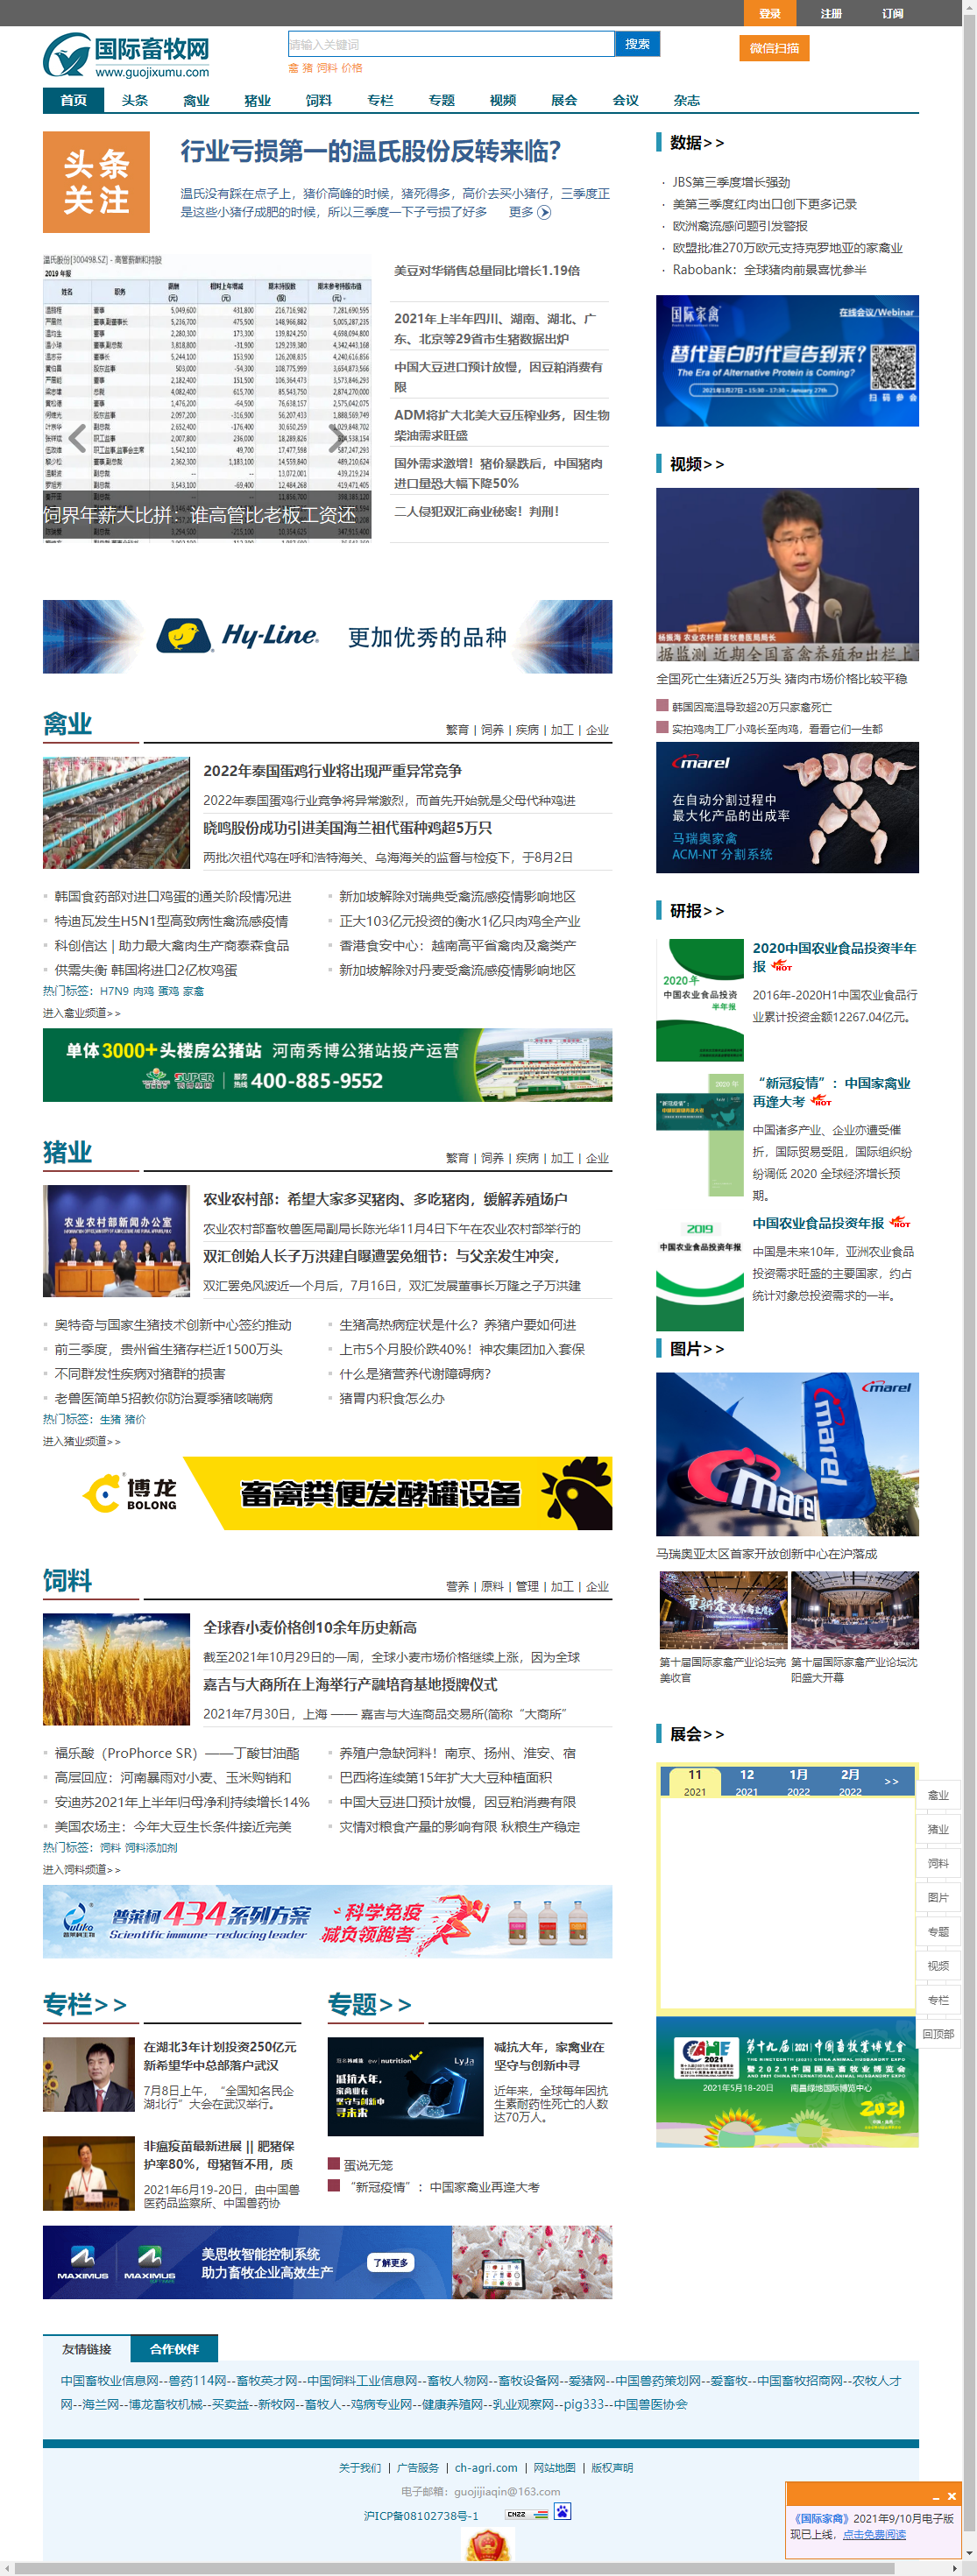 上海莱伽文化传播有限公司网站案例